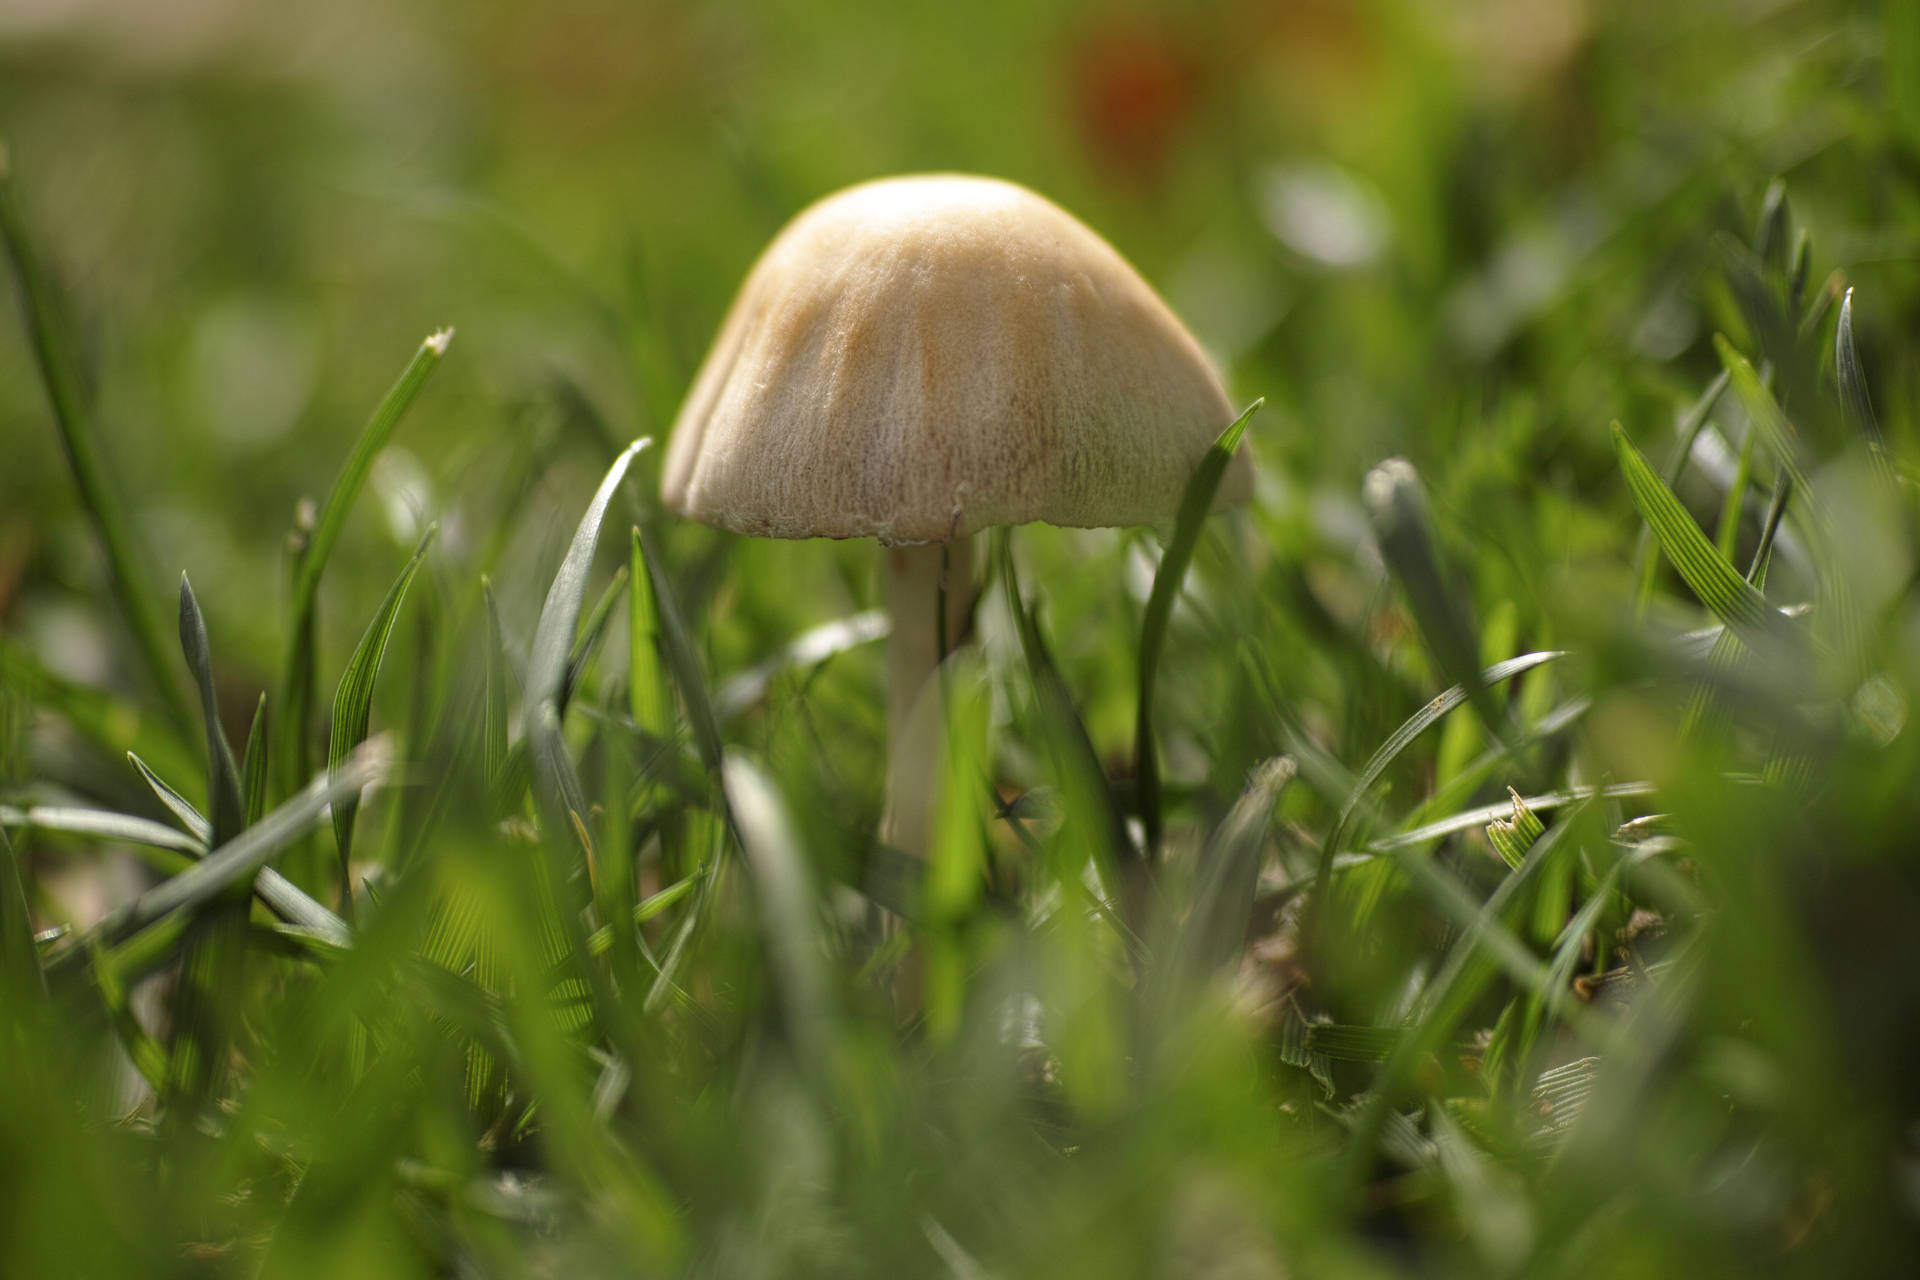 Cute Brown Mushroom Growing In Grass Background